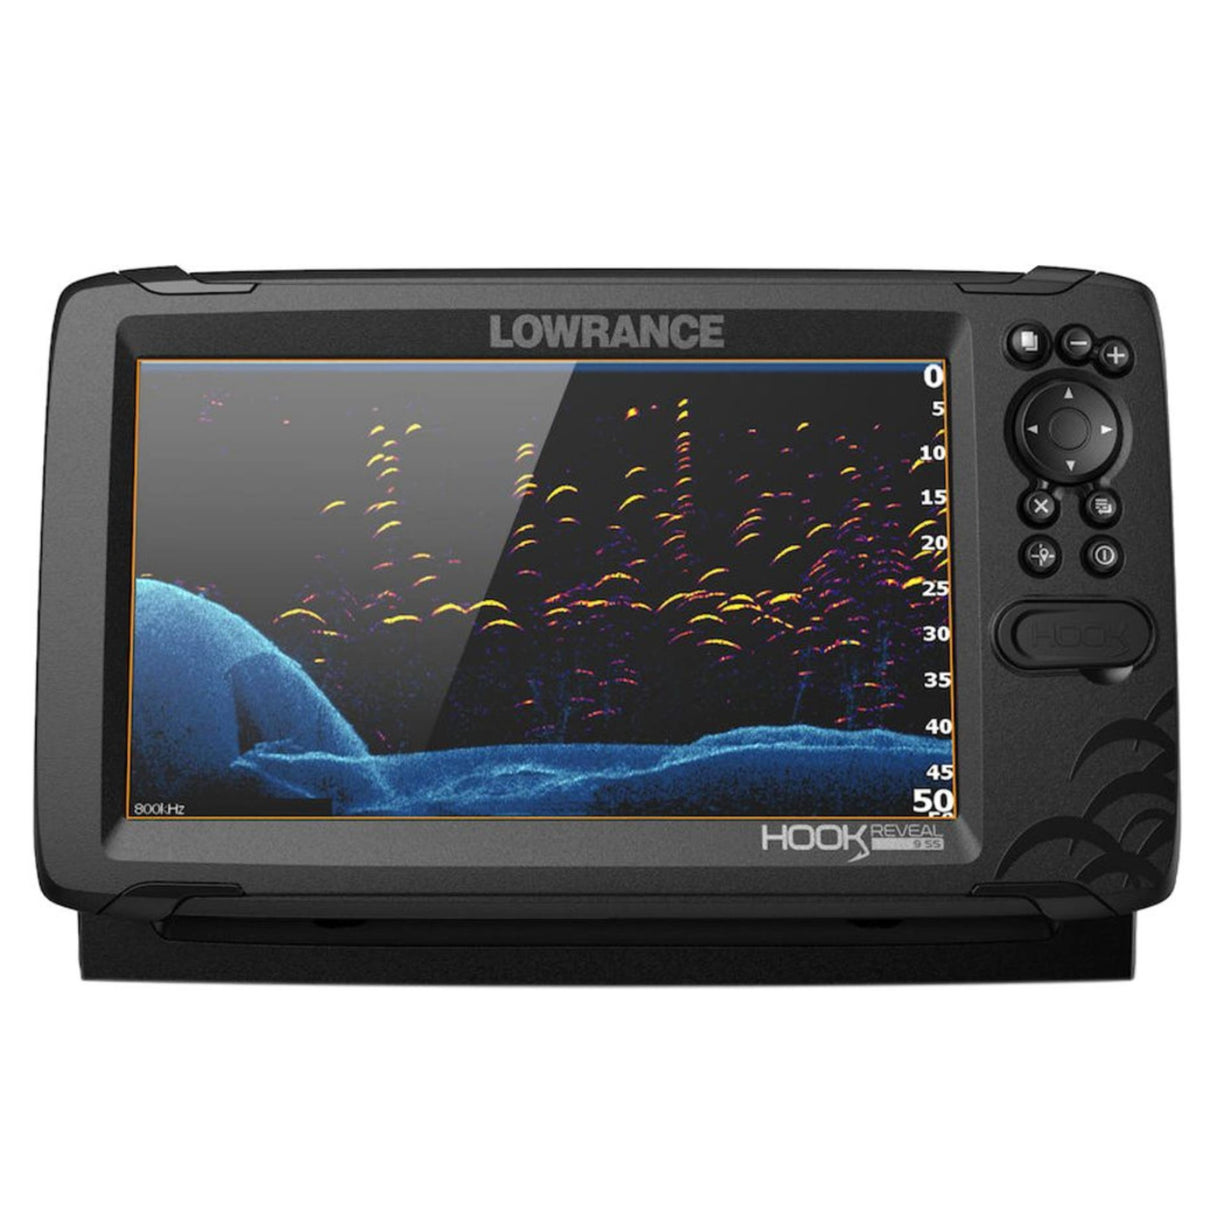 Lowrance Hook Reveal 5 83/200 HDI ROW Fishfinder - 7 Display